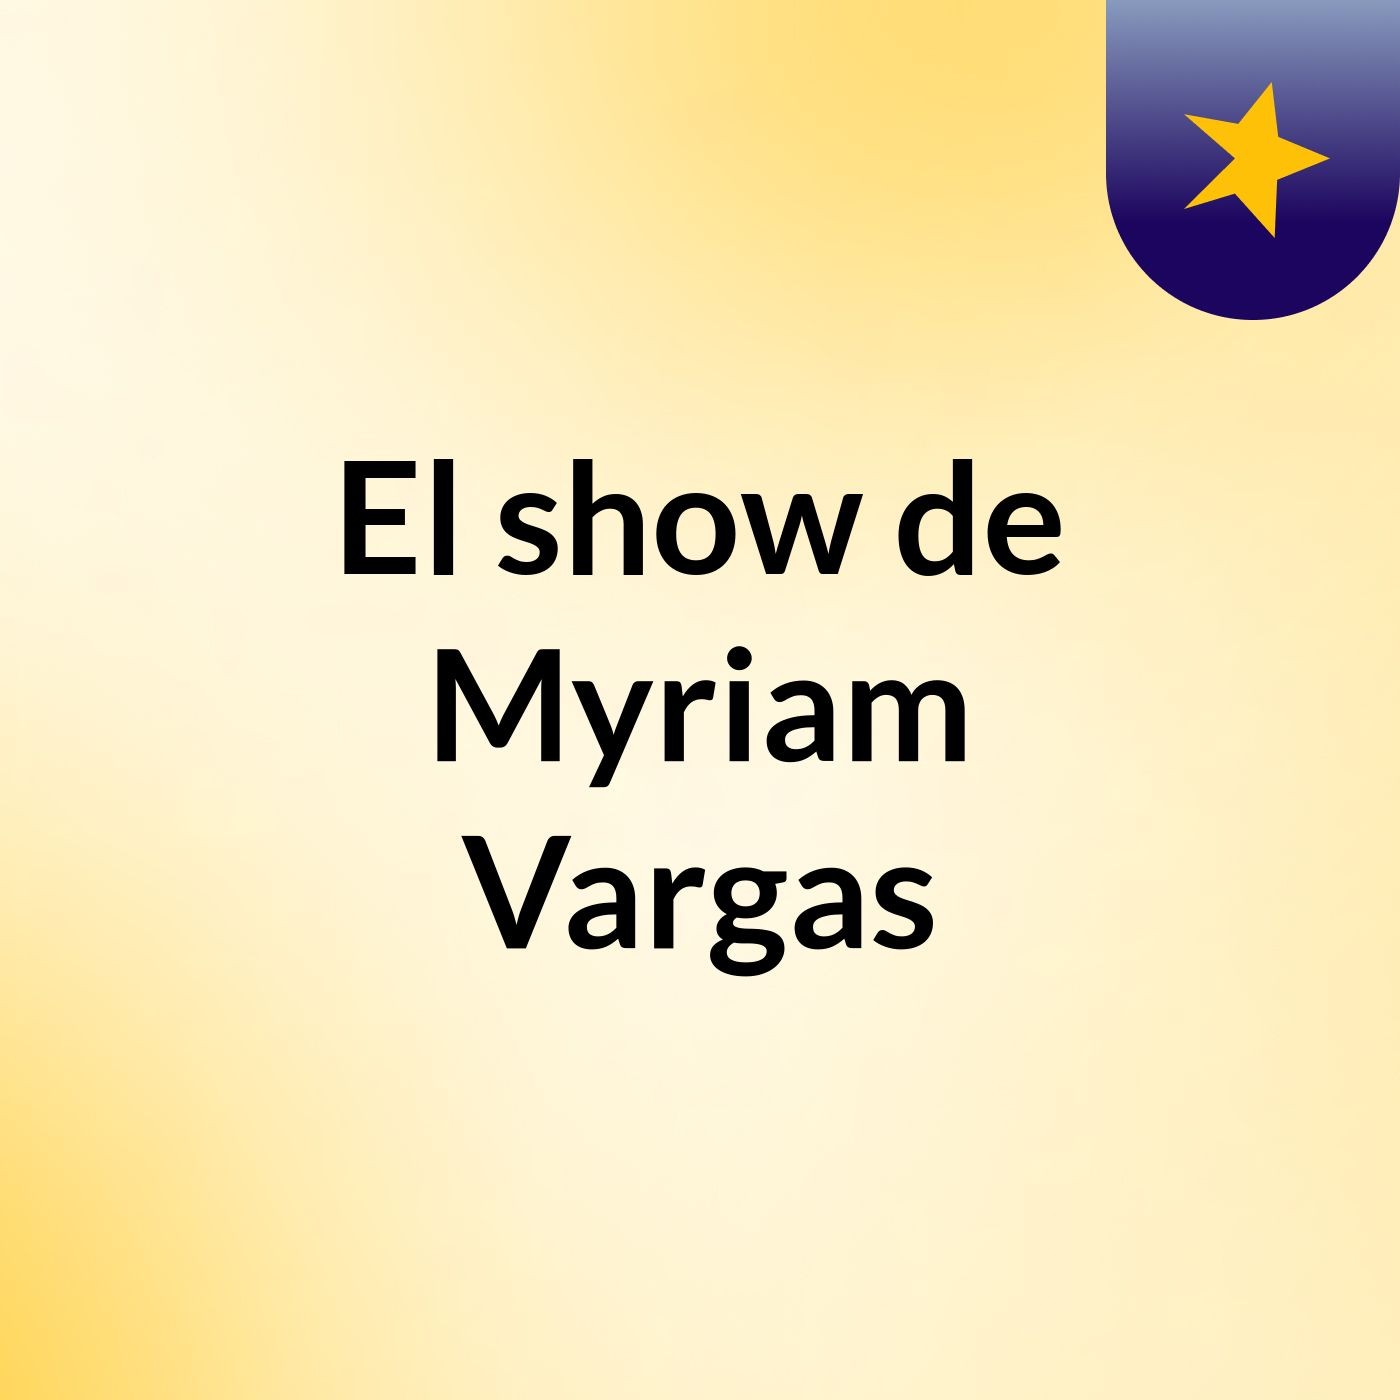 El show de Myriam Vargas